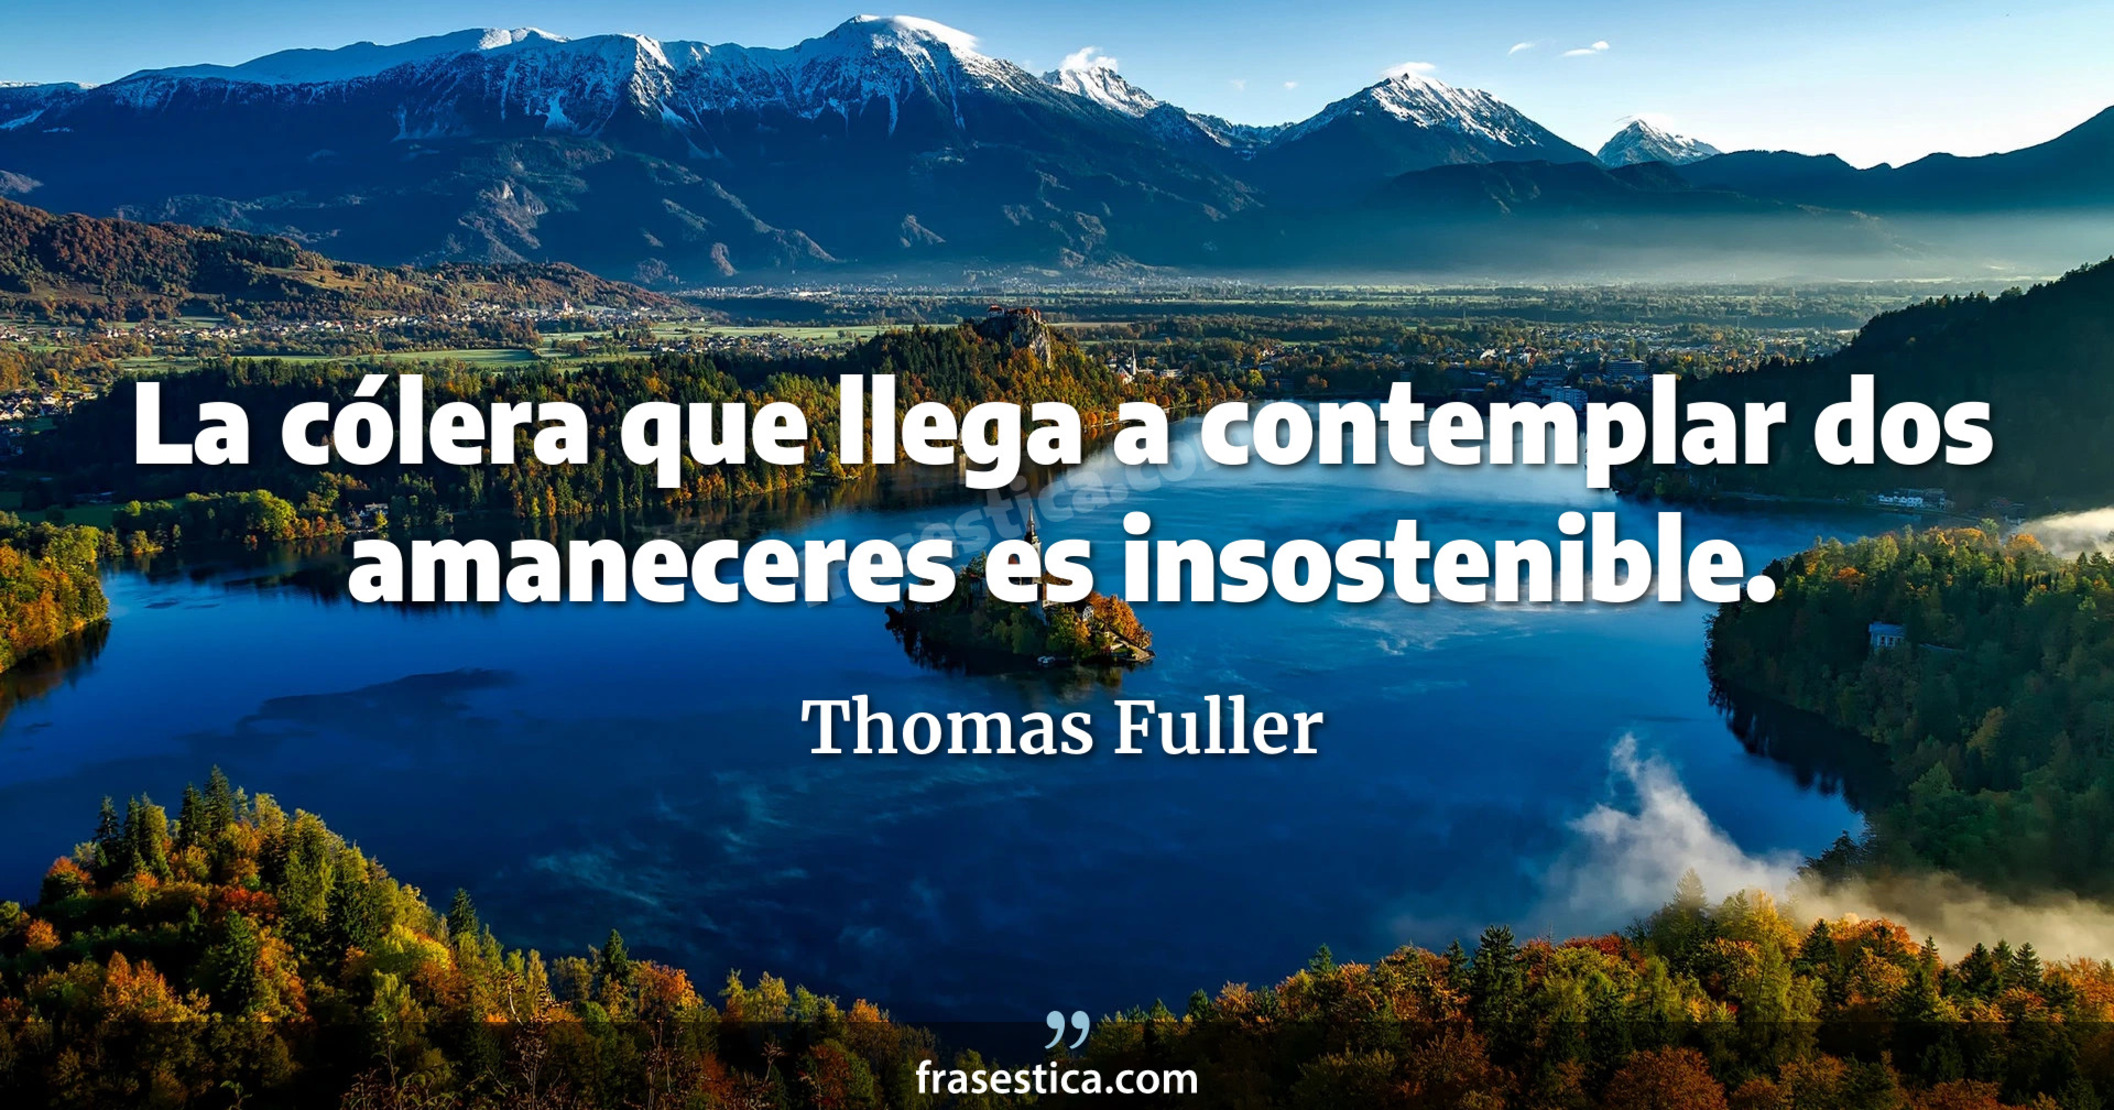 La cólera que llega a contemplar dos amaneceres es insostenible. - Thomas Fuller